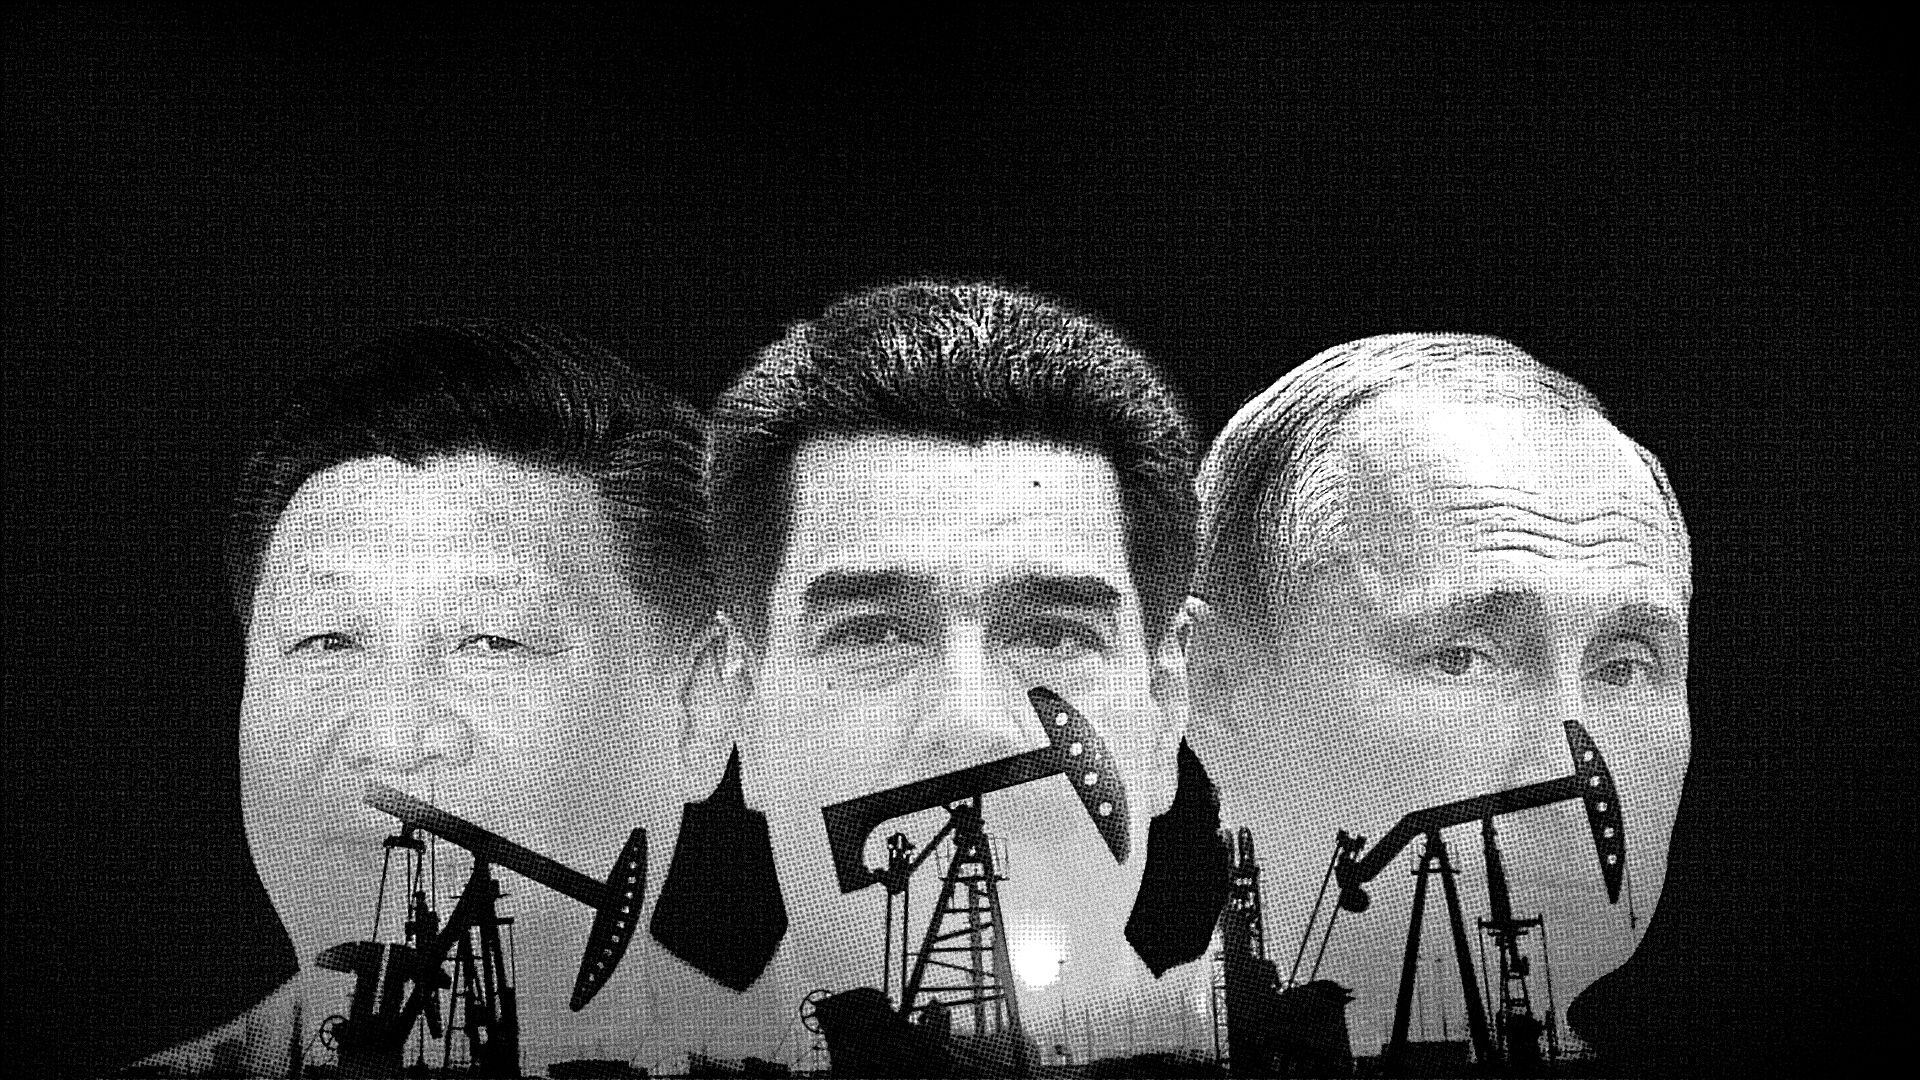 Xi Jinping, Nicolás Maduro y Vladimir Putin, unidos por el petróleo